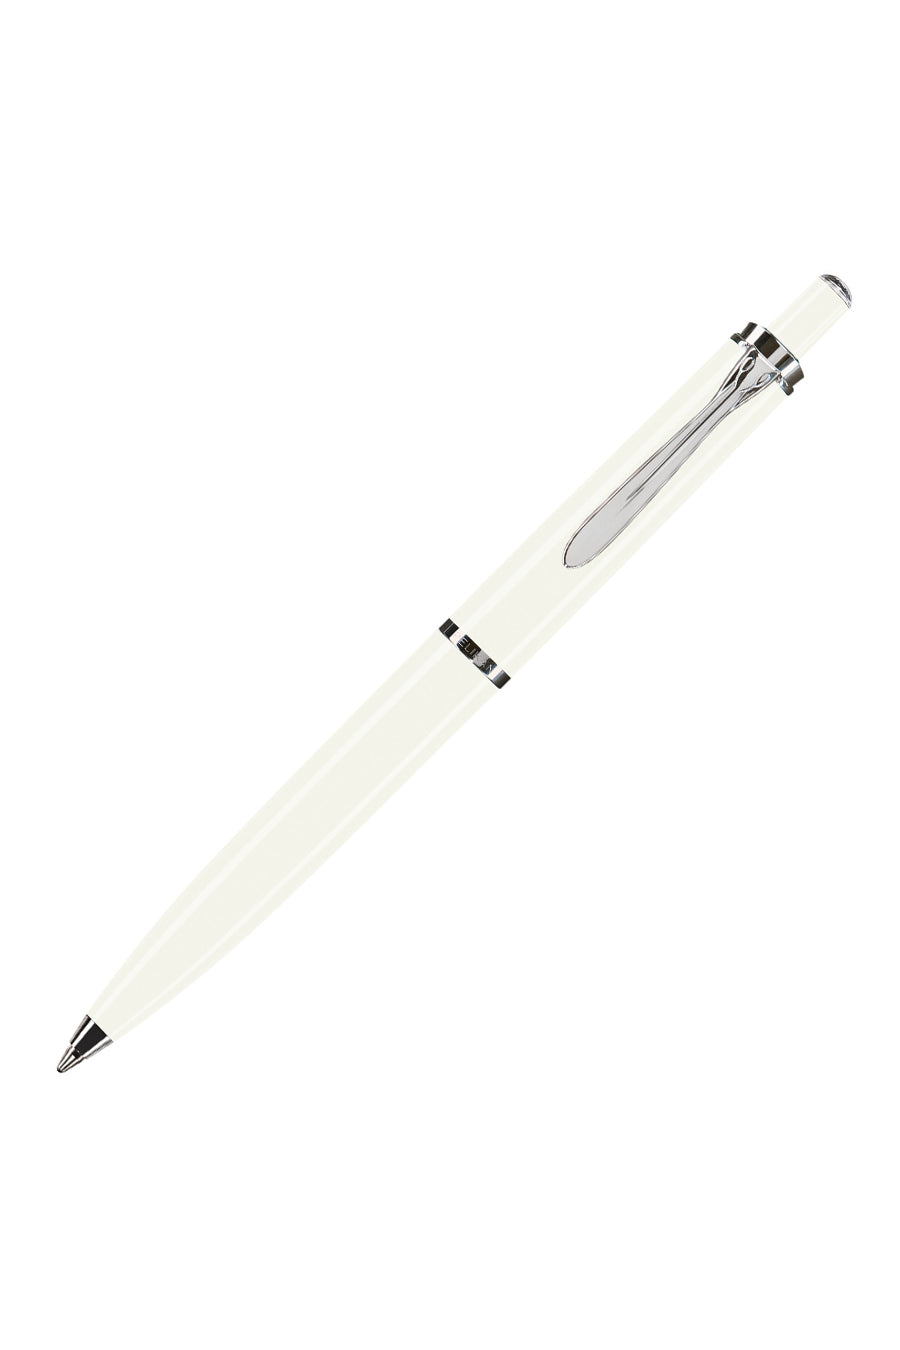 K205 White Ballpoint Pen In Silver Gift Box